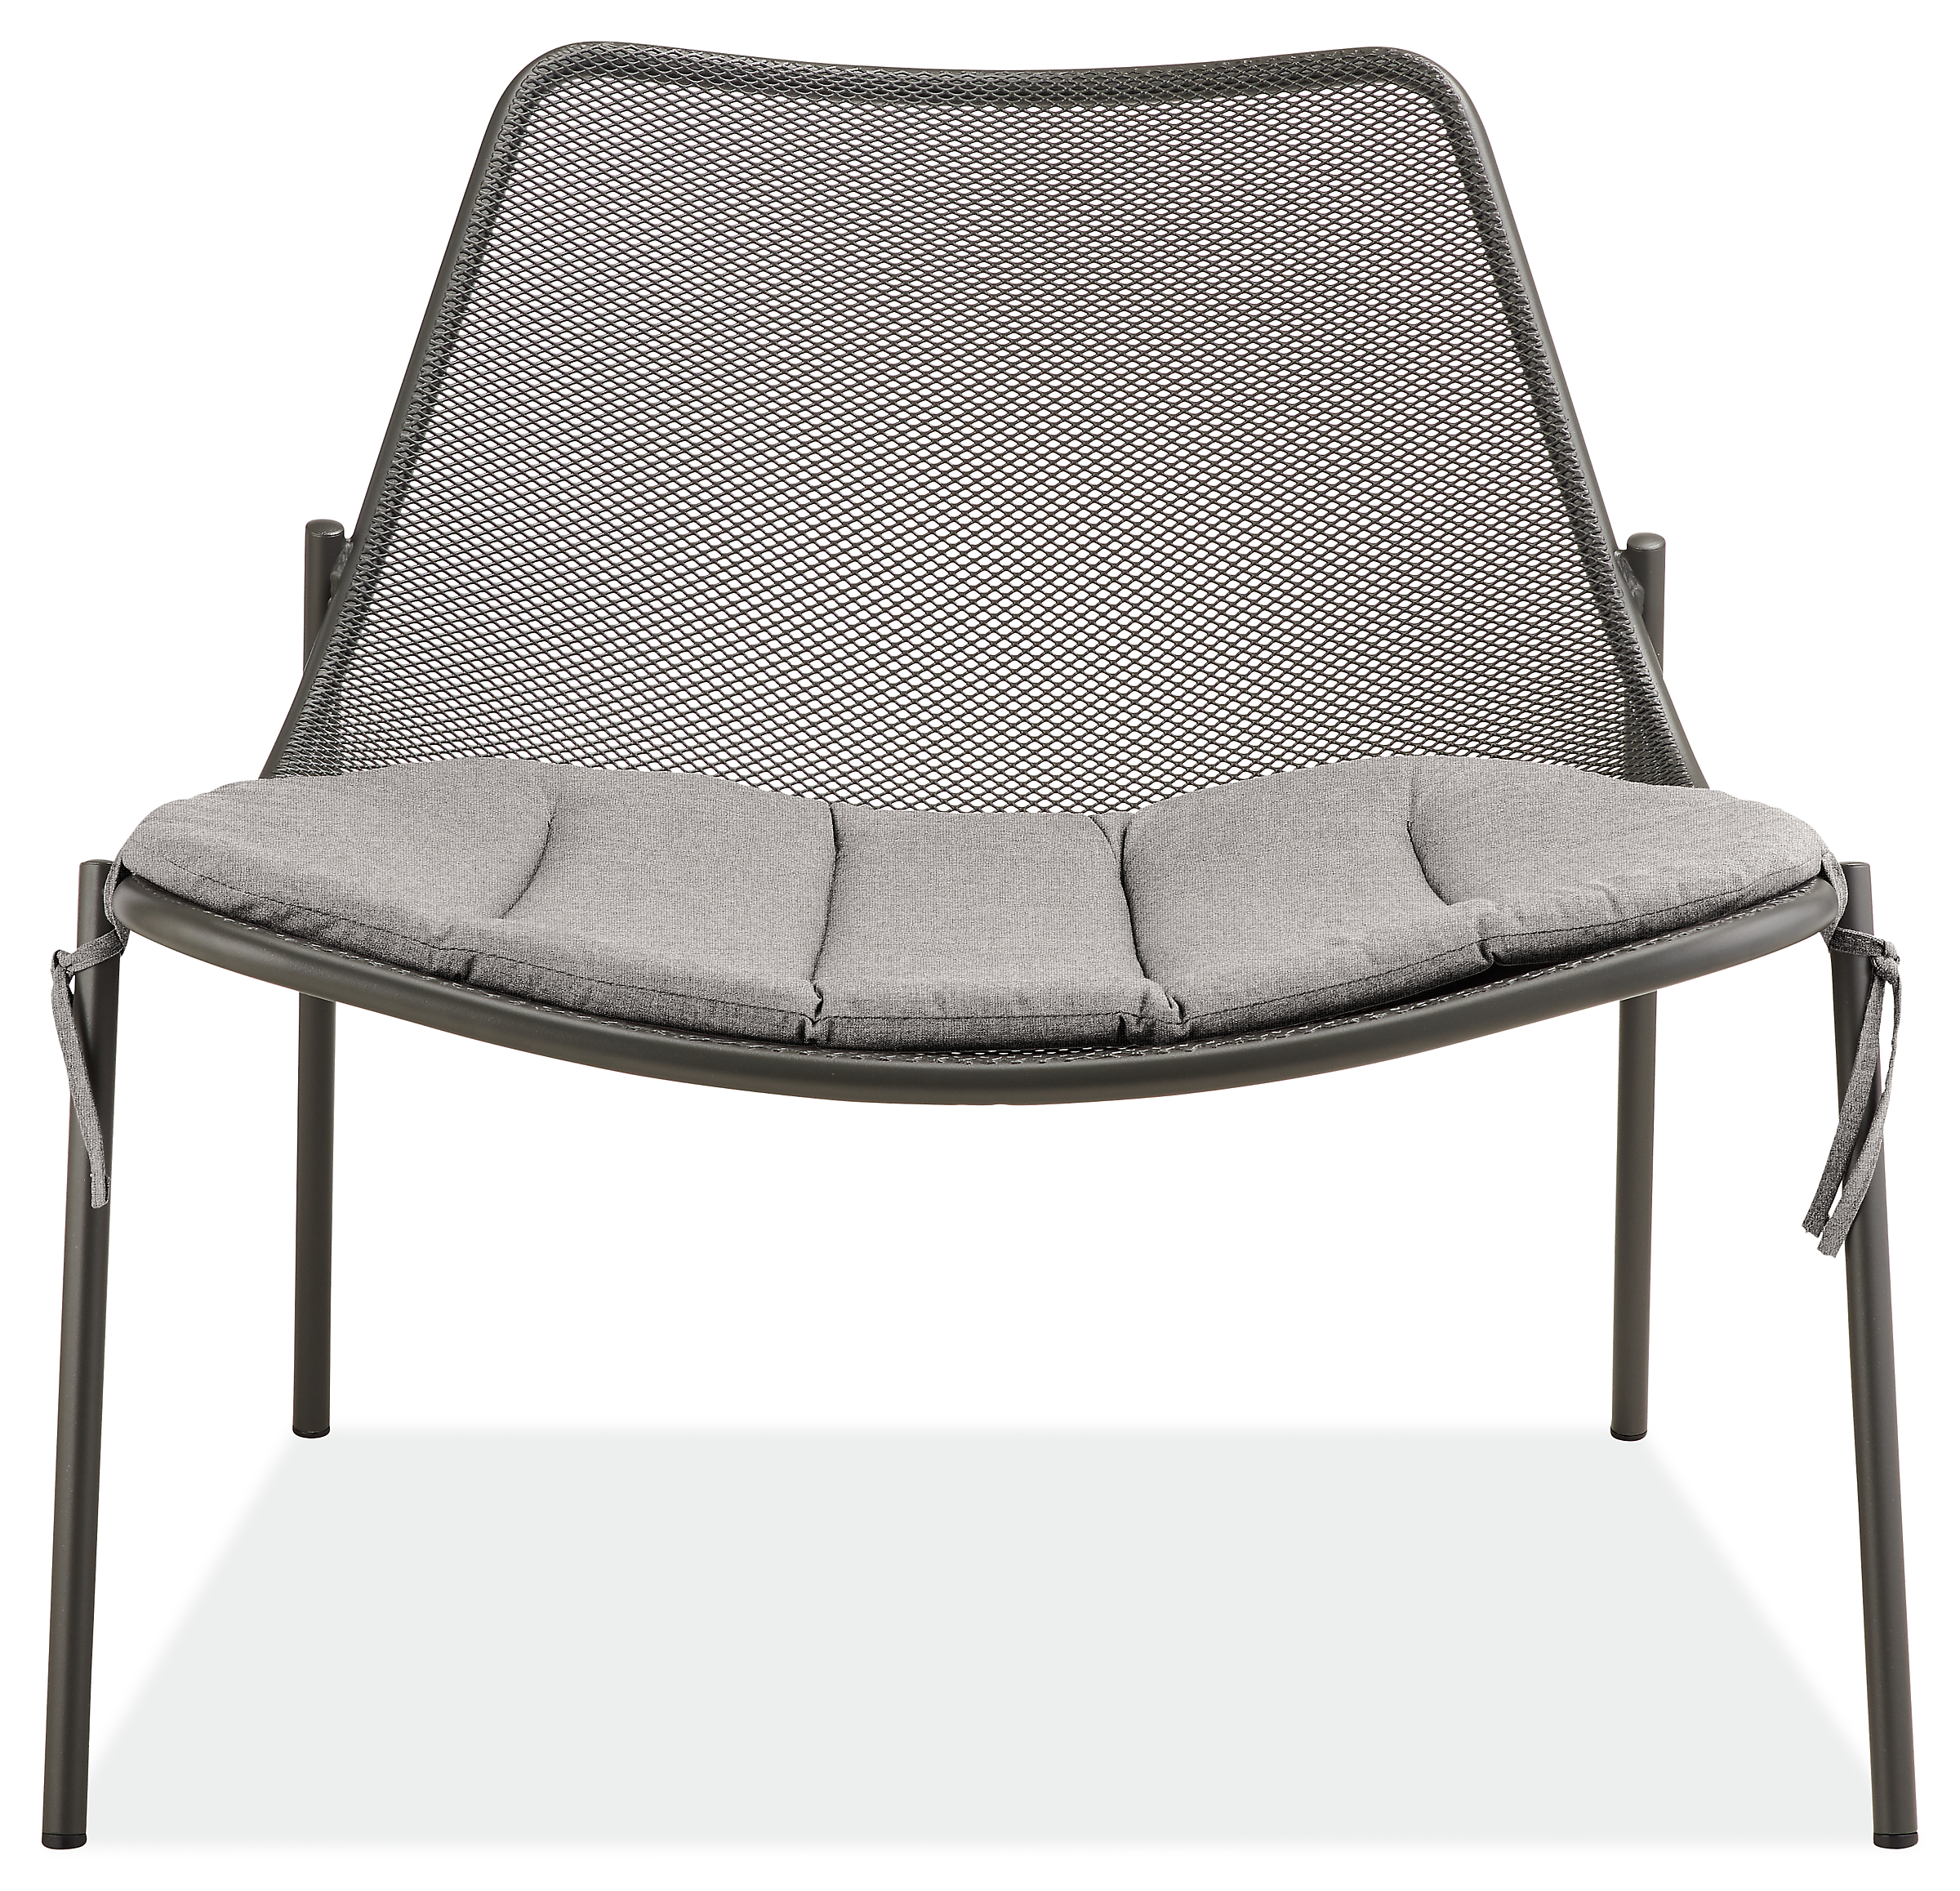 Soleil Lounge Chair Cushion